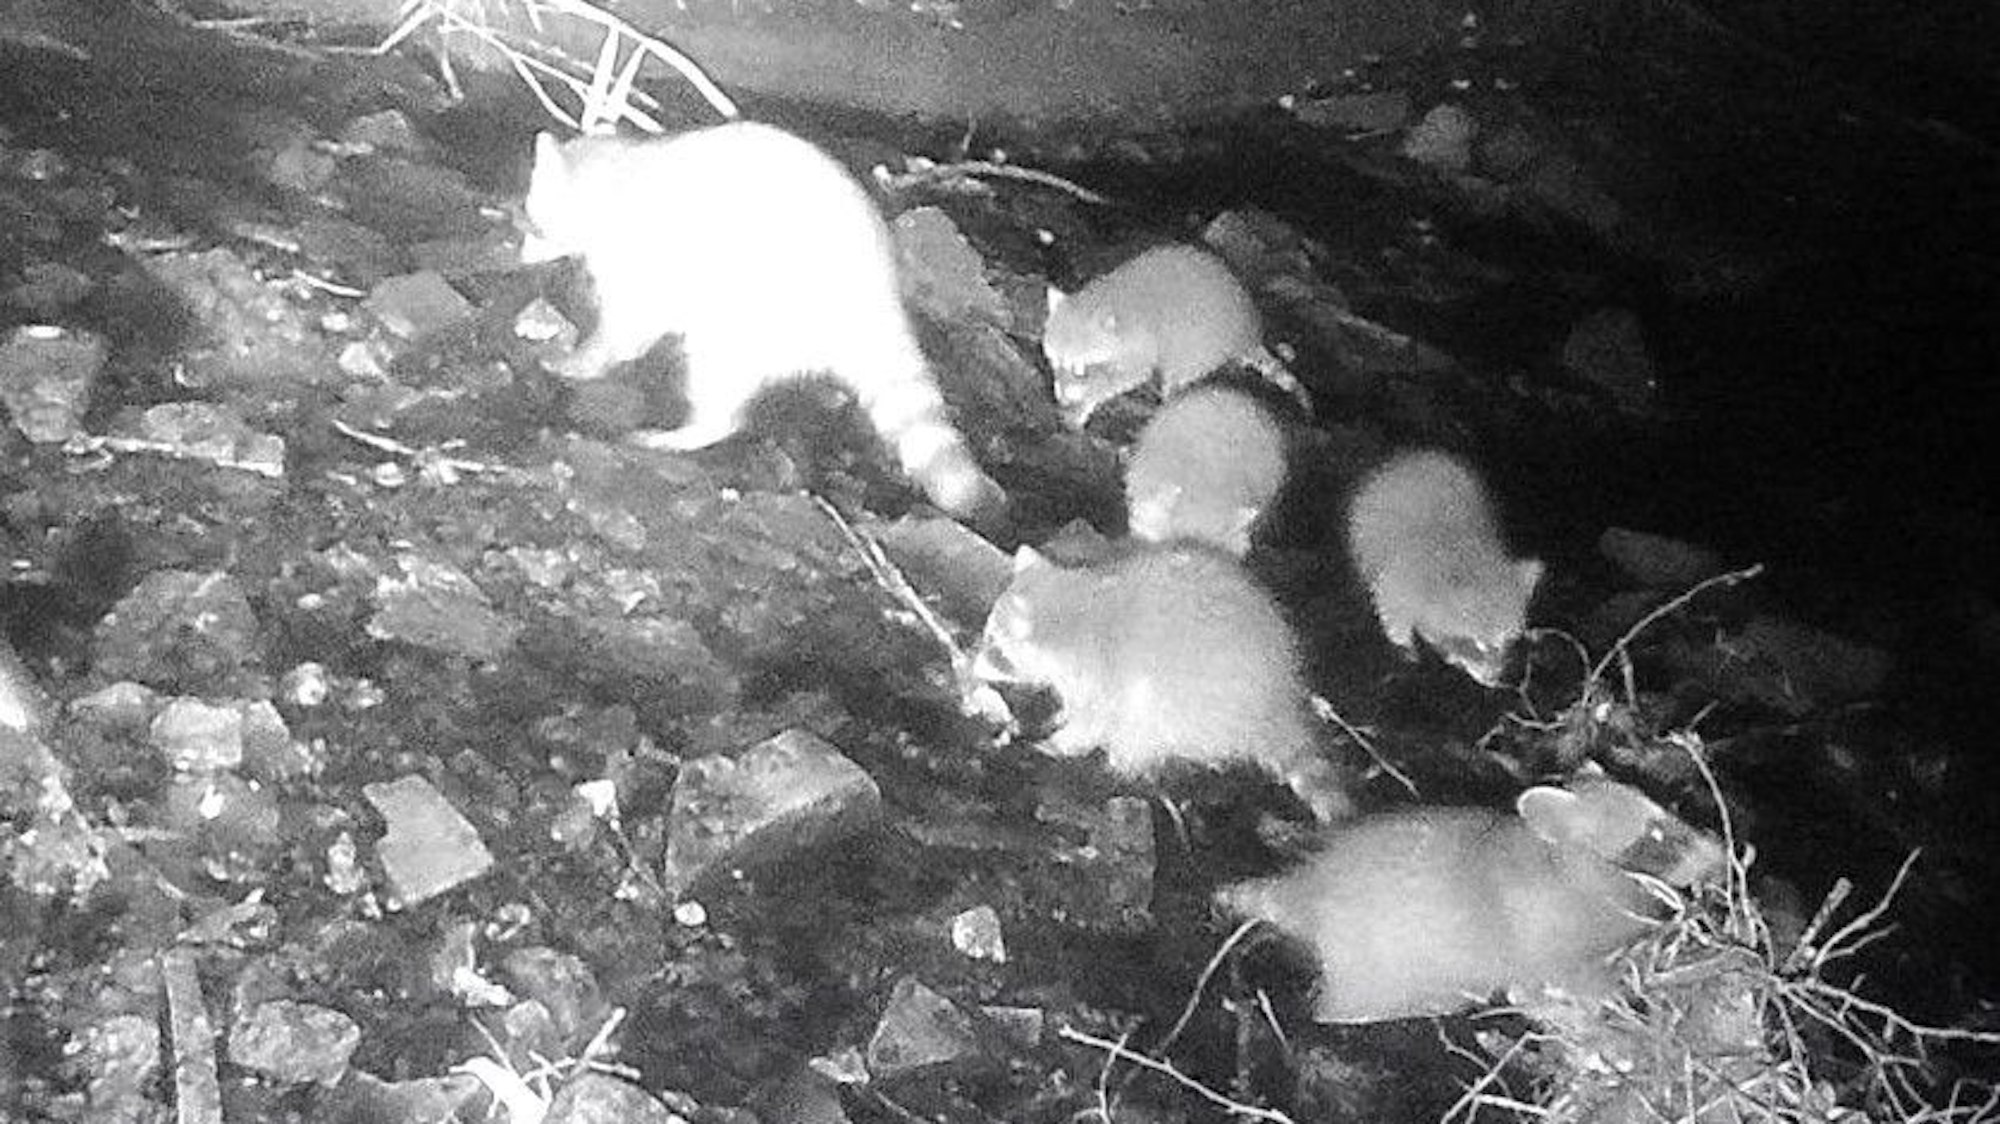 Die Aufnahme einer Nachtbildkamera zeigt einen erwachsenen Waschbären und fünf Jungtiere als graue bis weiße Silhouetten vor einem dunklen Hintergrund.